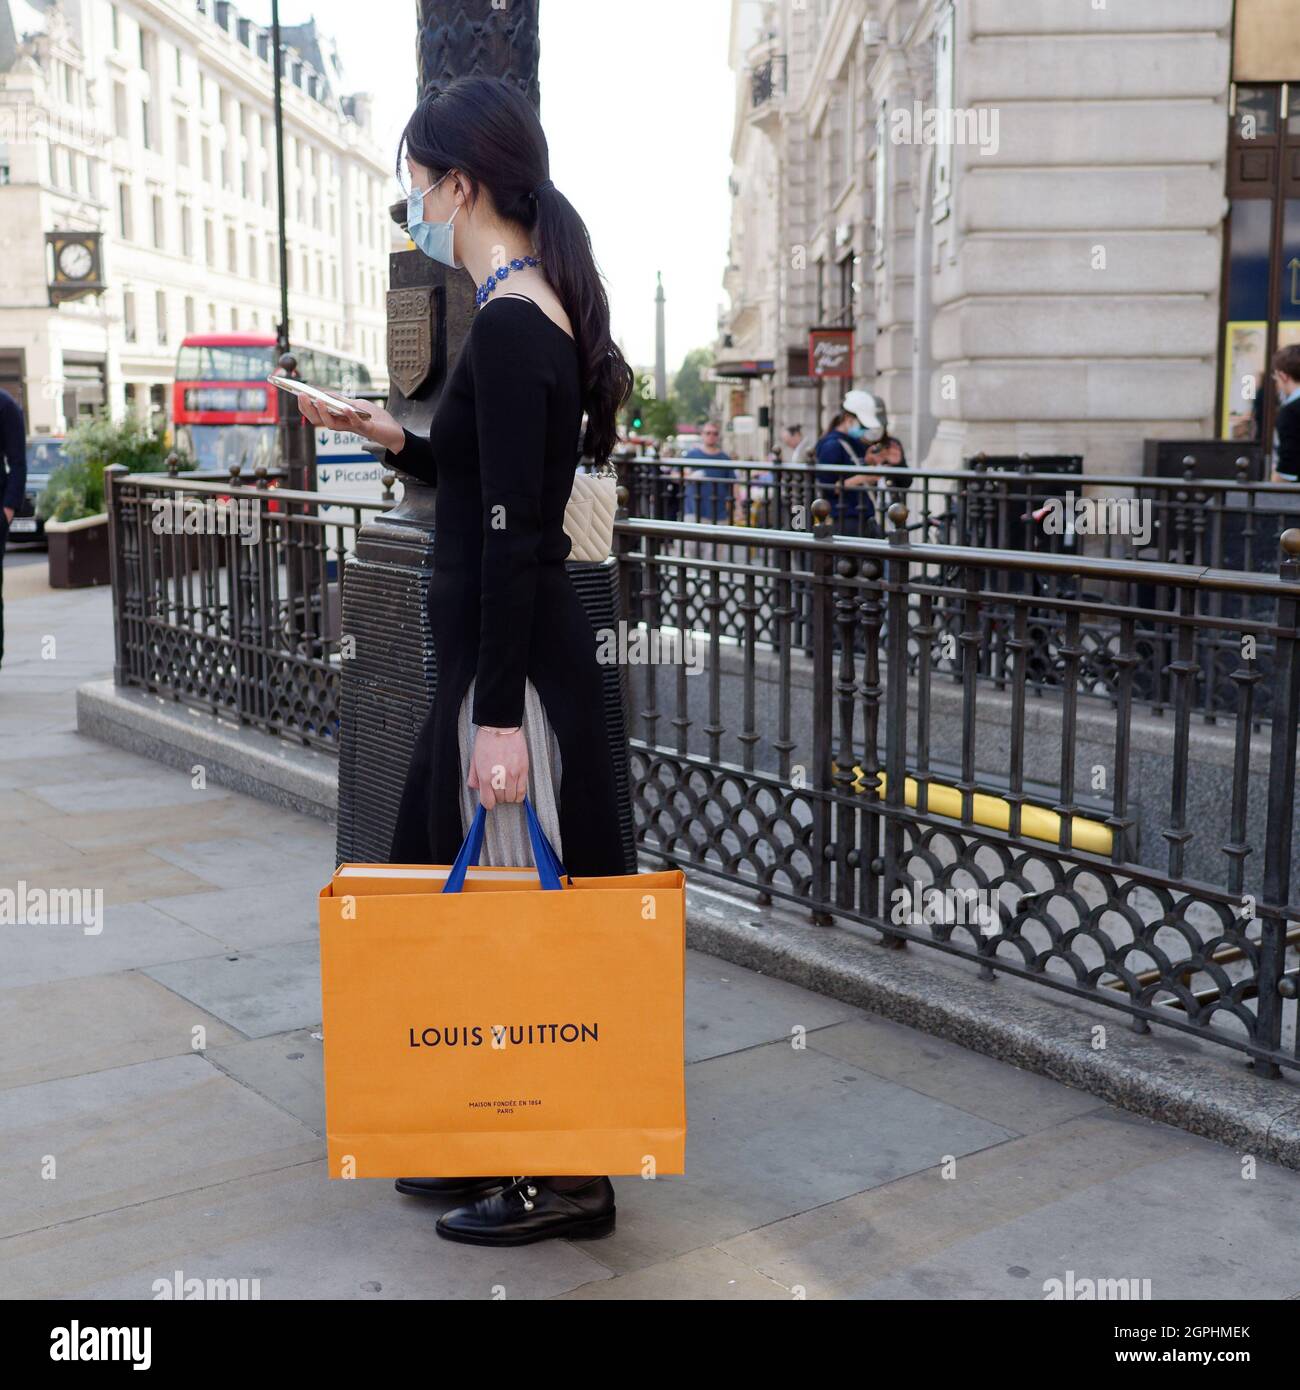 London, Greater London, England, September 21 2021: Eine elegante asiatische Dame in einem schwarzen Outfit prüft ihr Telefon, während sie eine Louis Vuitton Einkaufstasche trägt Stockfoto